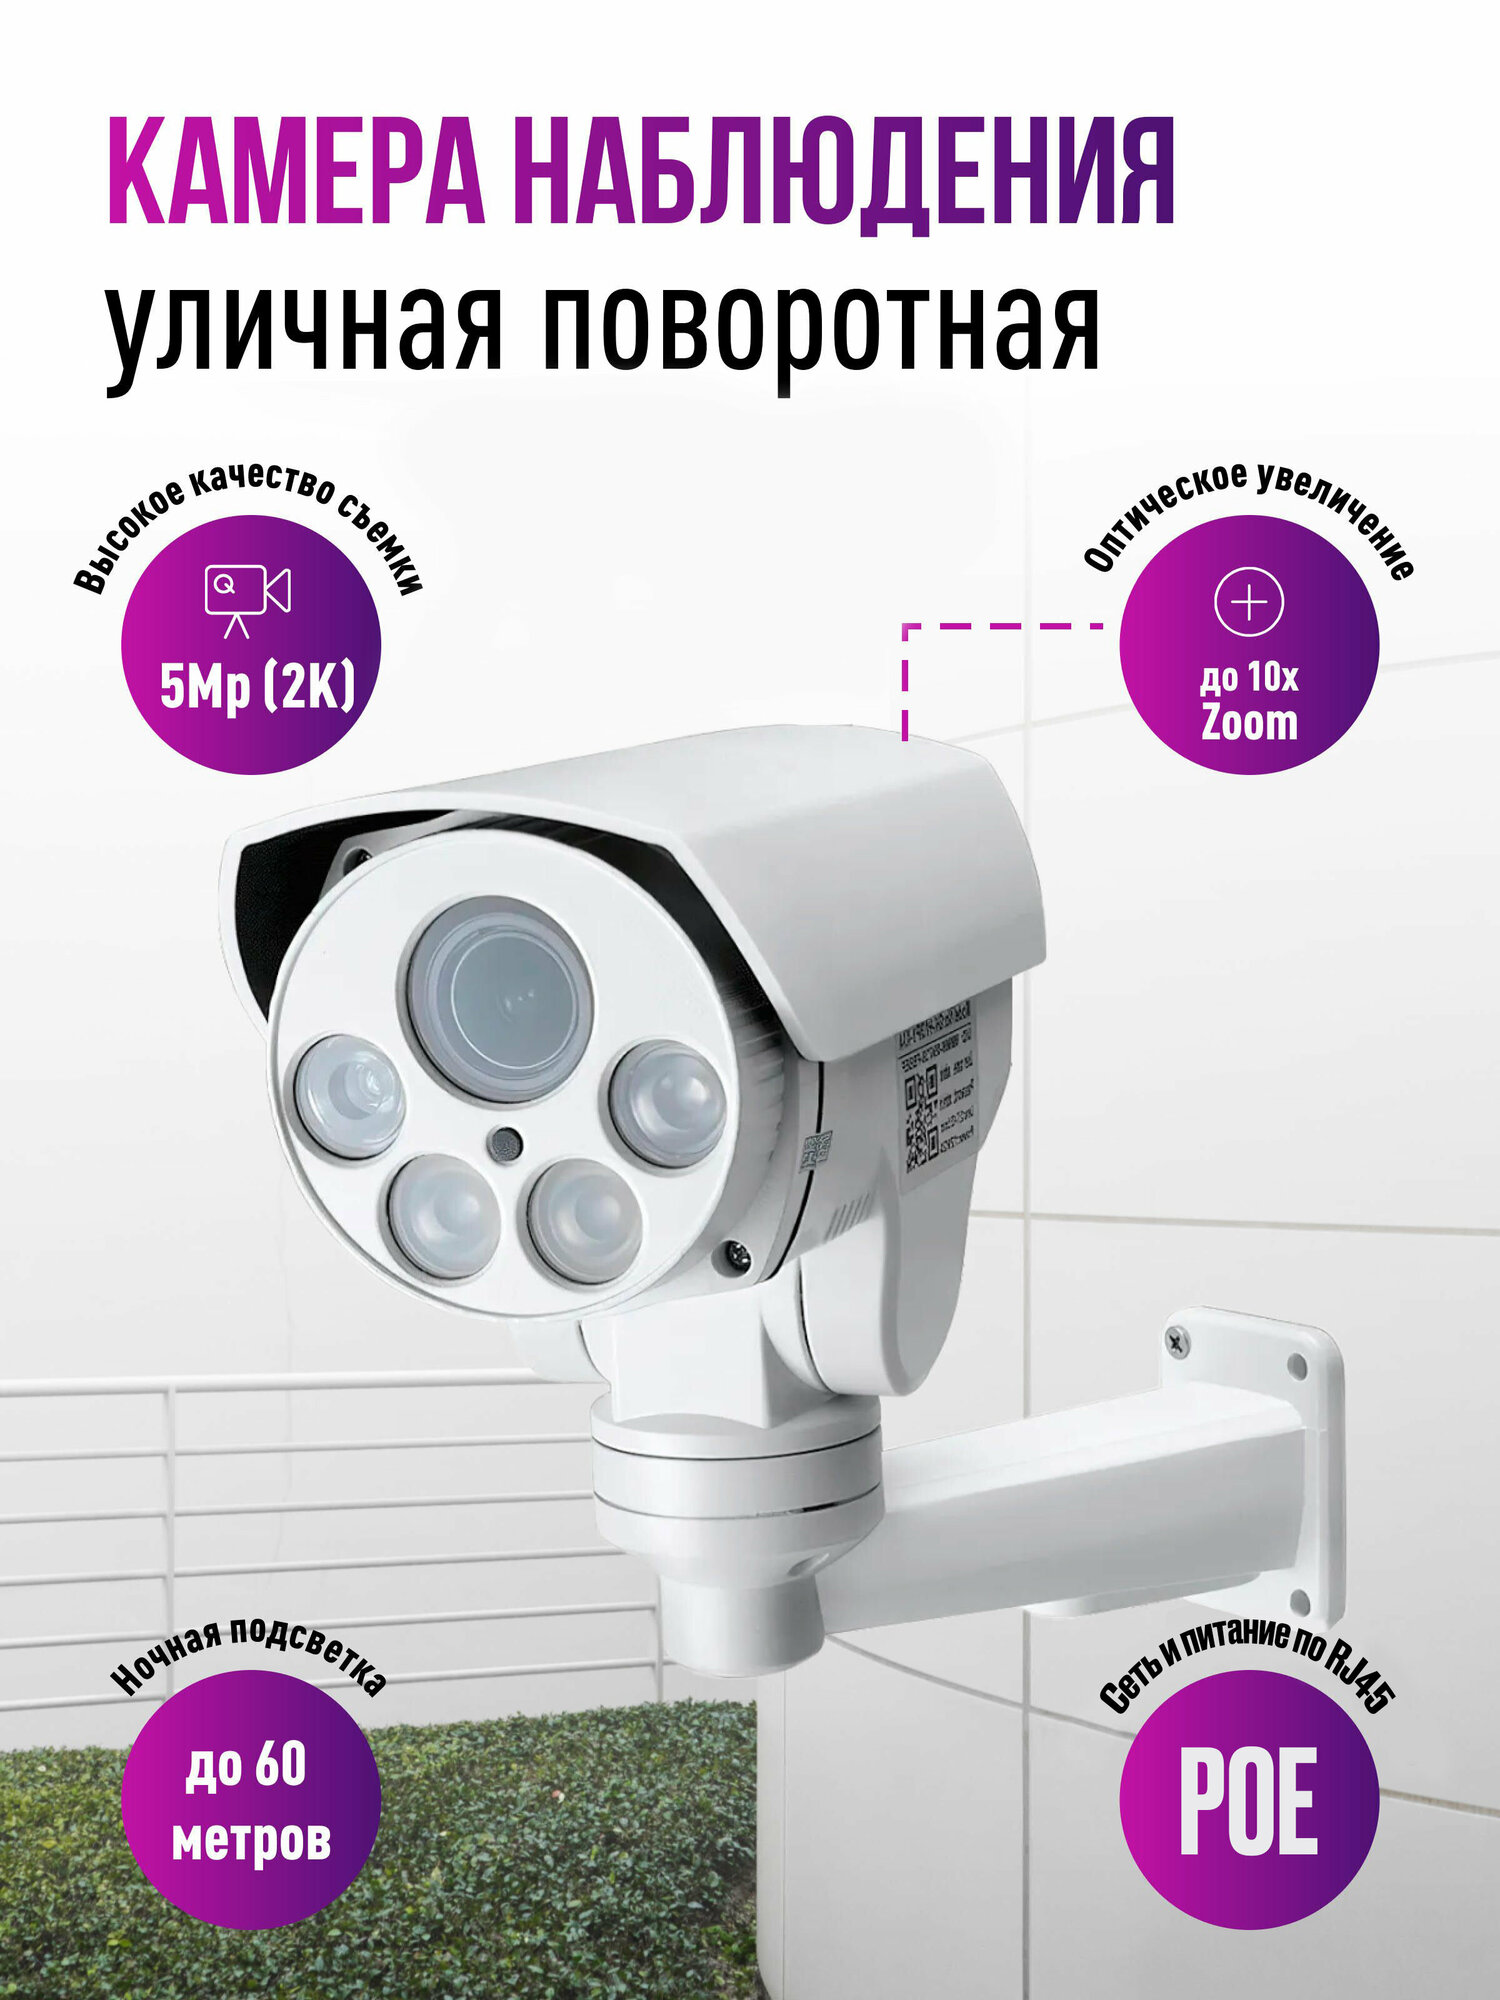 Поворотная IP POE камера для улицы и помещений 5Mp 2K c 5x zoom, звуком и записью на карту Millenium 433P